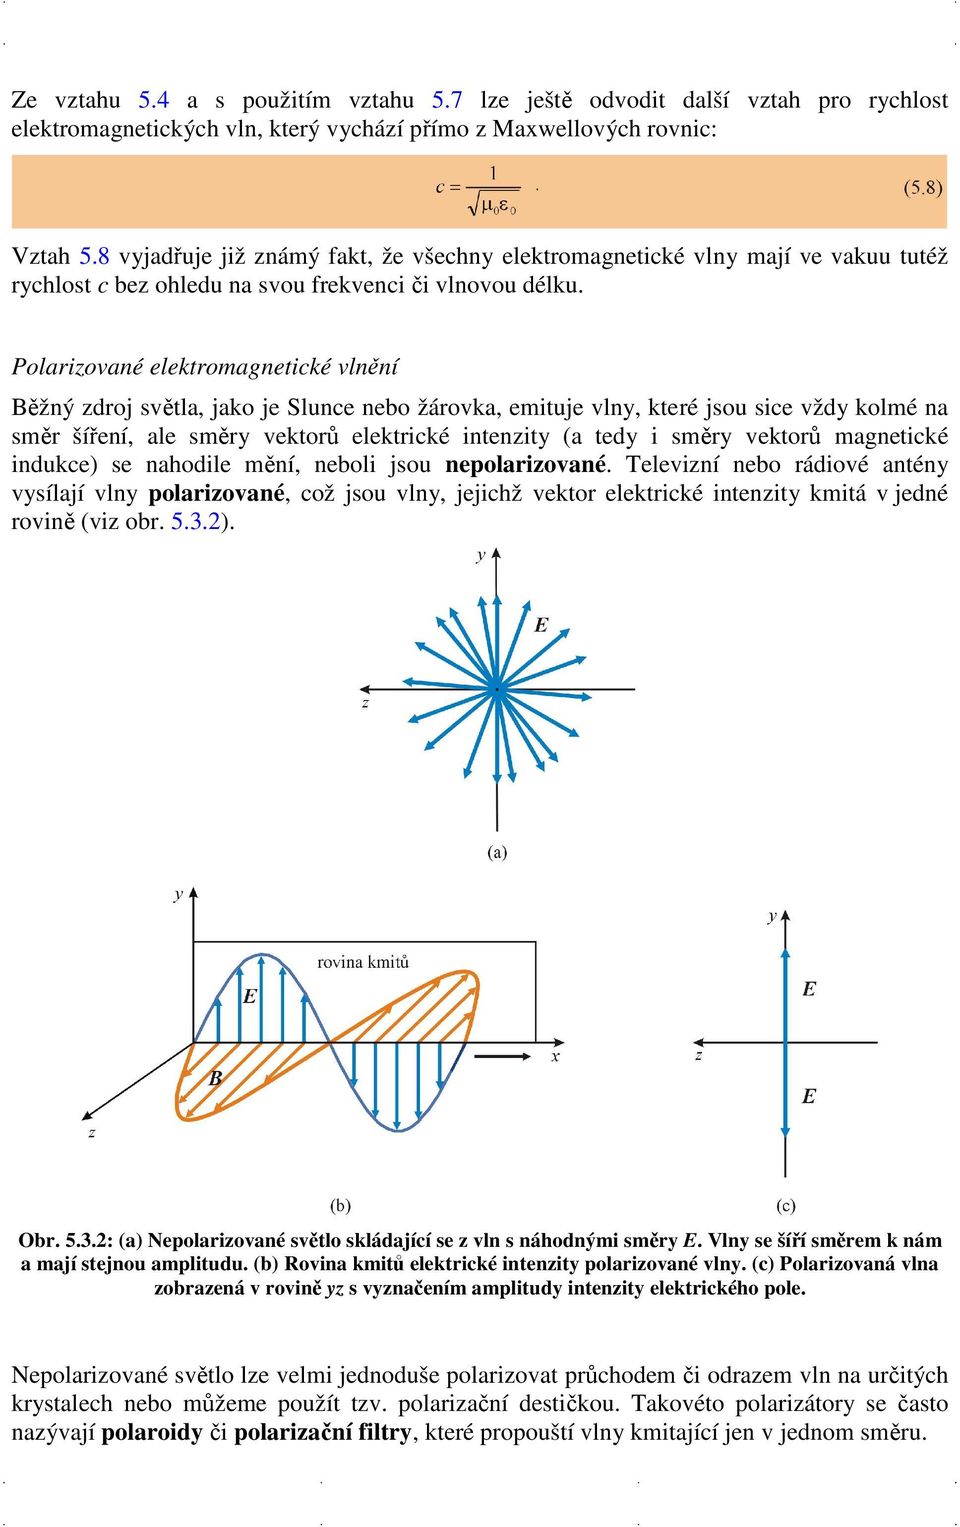 Polarizované elektromagnetické vlnění Běžný zdroj světla, jako je Slunce nebo žárovka, emituje vlny, které jsou sice vždy kolmé na směr šíření, ale směry vektorů elektrické intenzity (a tedy i směry